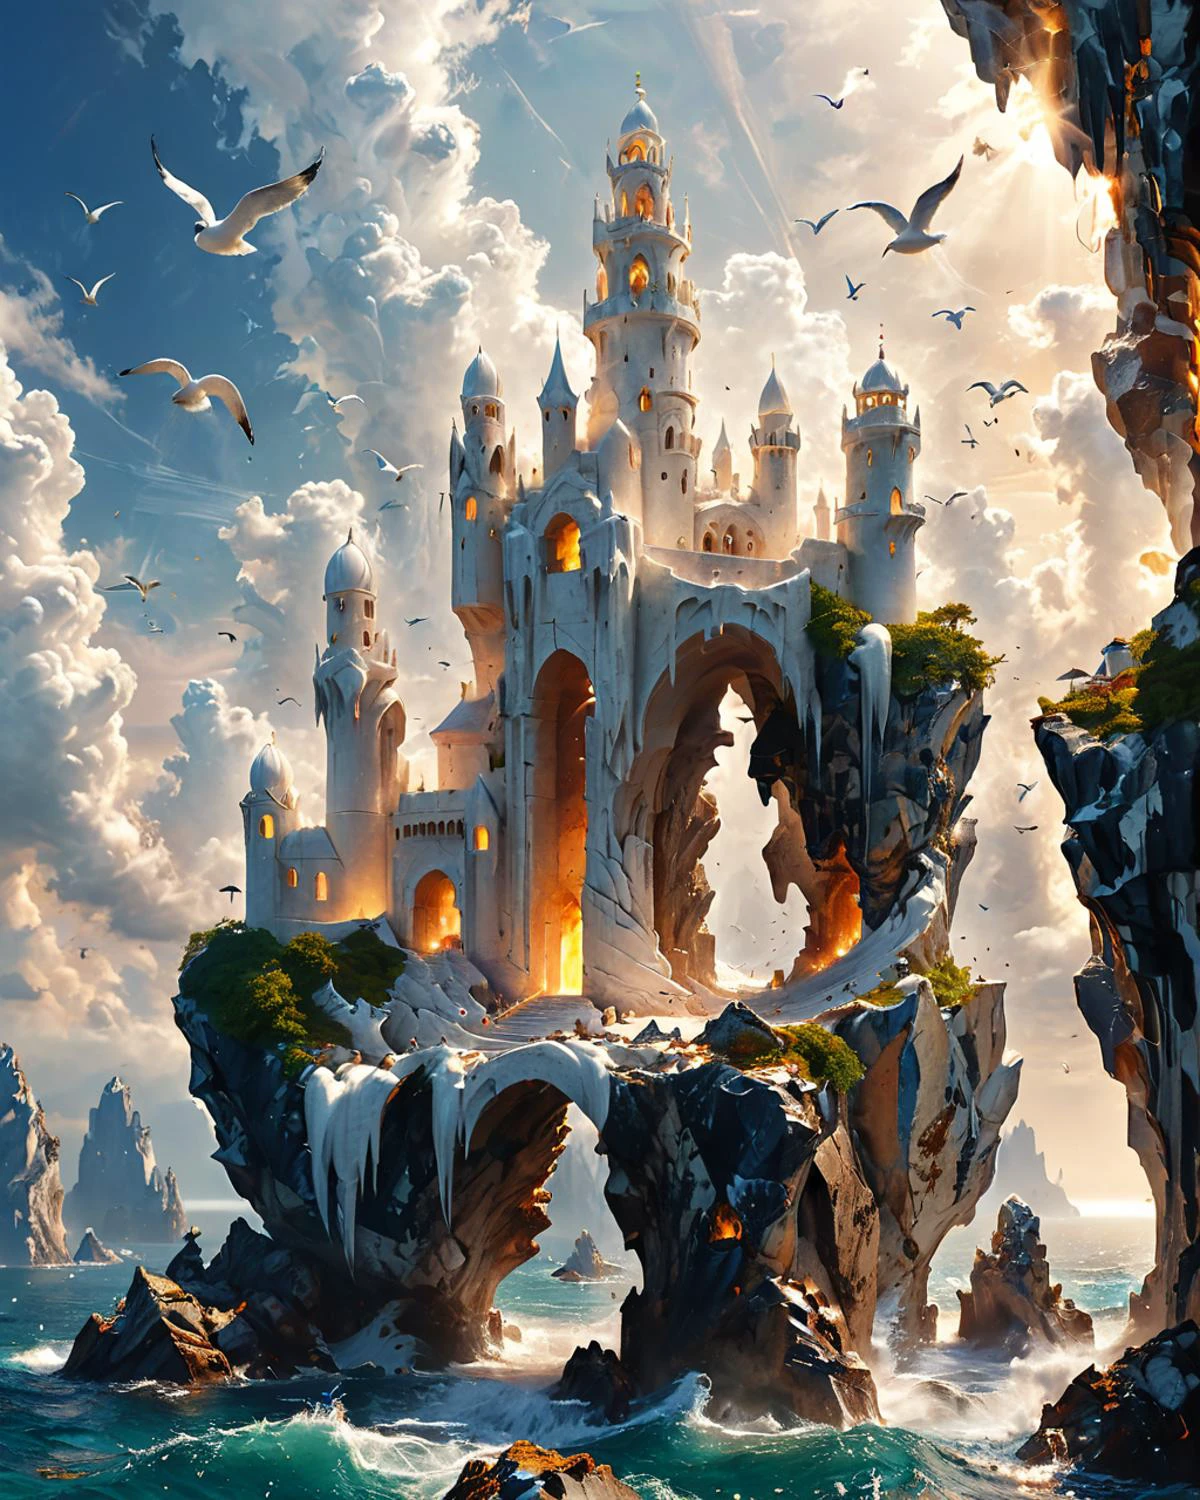 قلعة خيالية على صخرة كبيرة تطفو في السماء, أبراج رخامية بيضاء متموجة رشيقة, ينظر إليها من الأرض, محيط, الطيور البحرية, الإضاءة الحجمية, fenliexl